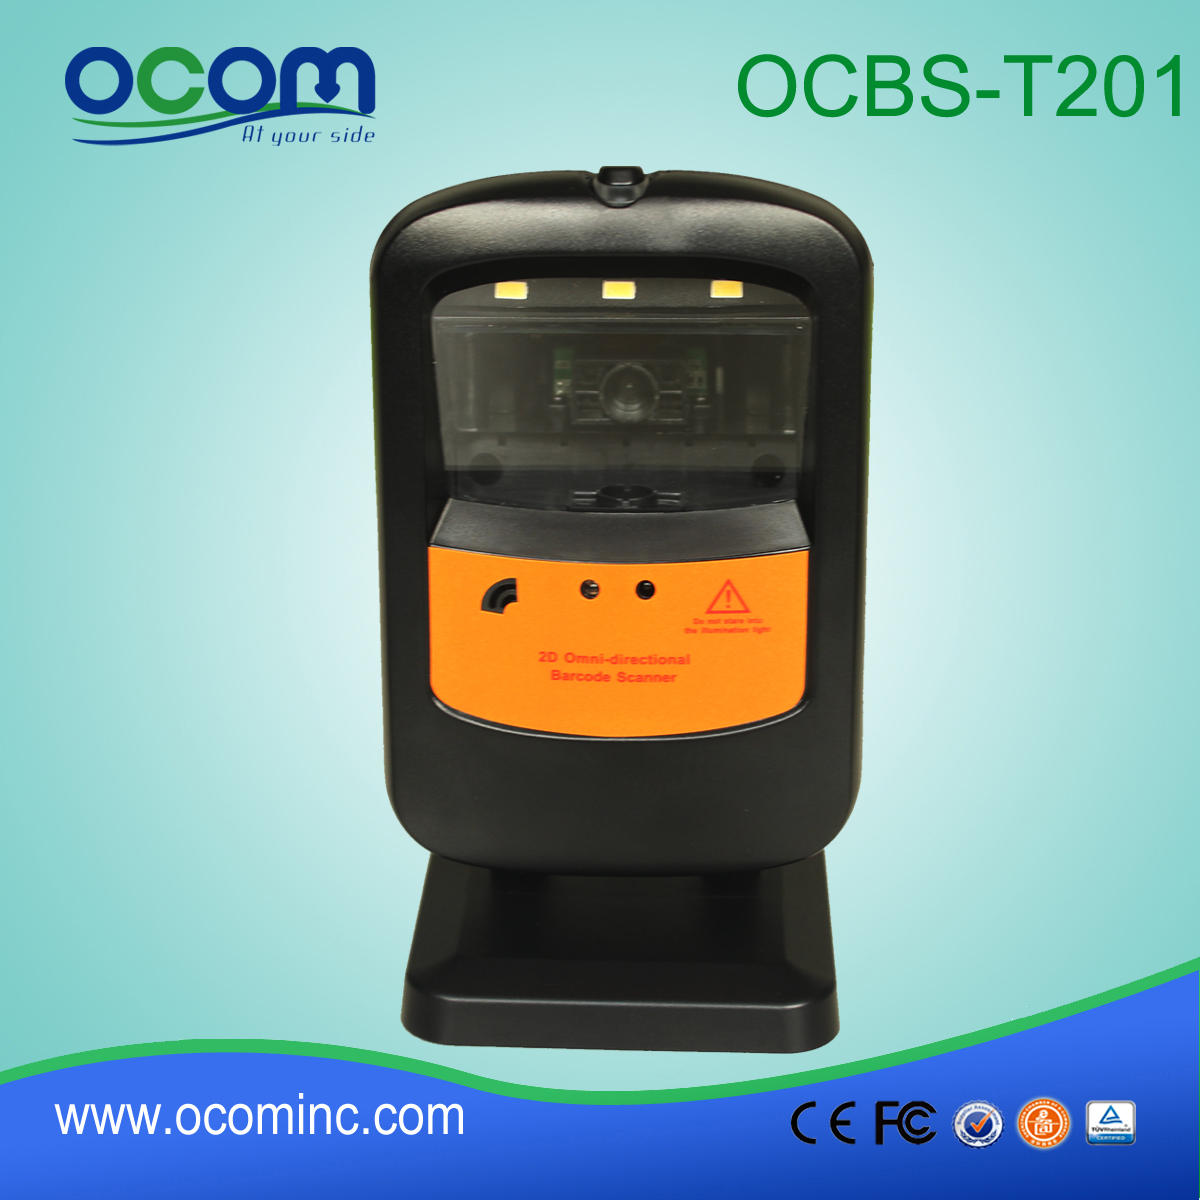 桌面式条码扫描器 (OCBS-T201)